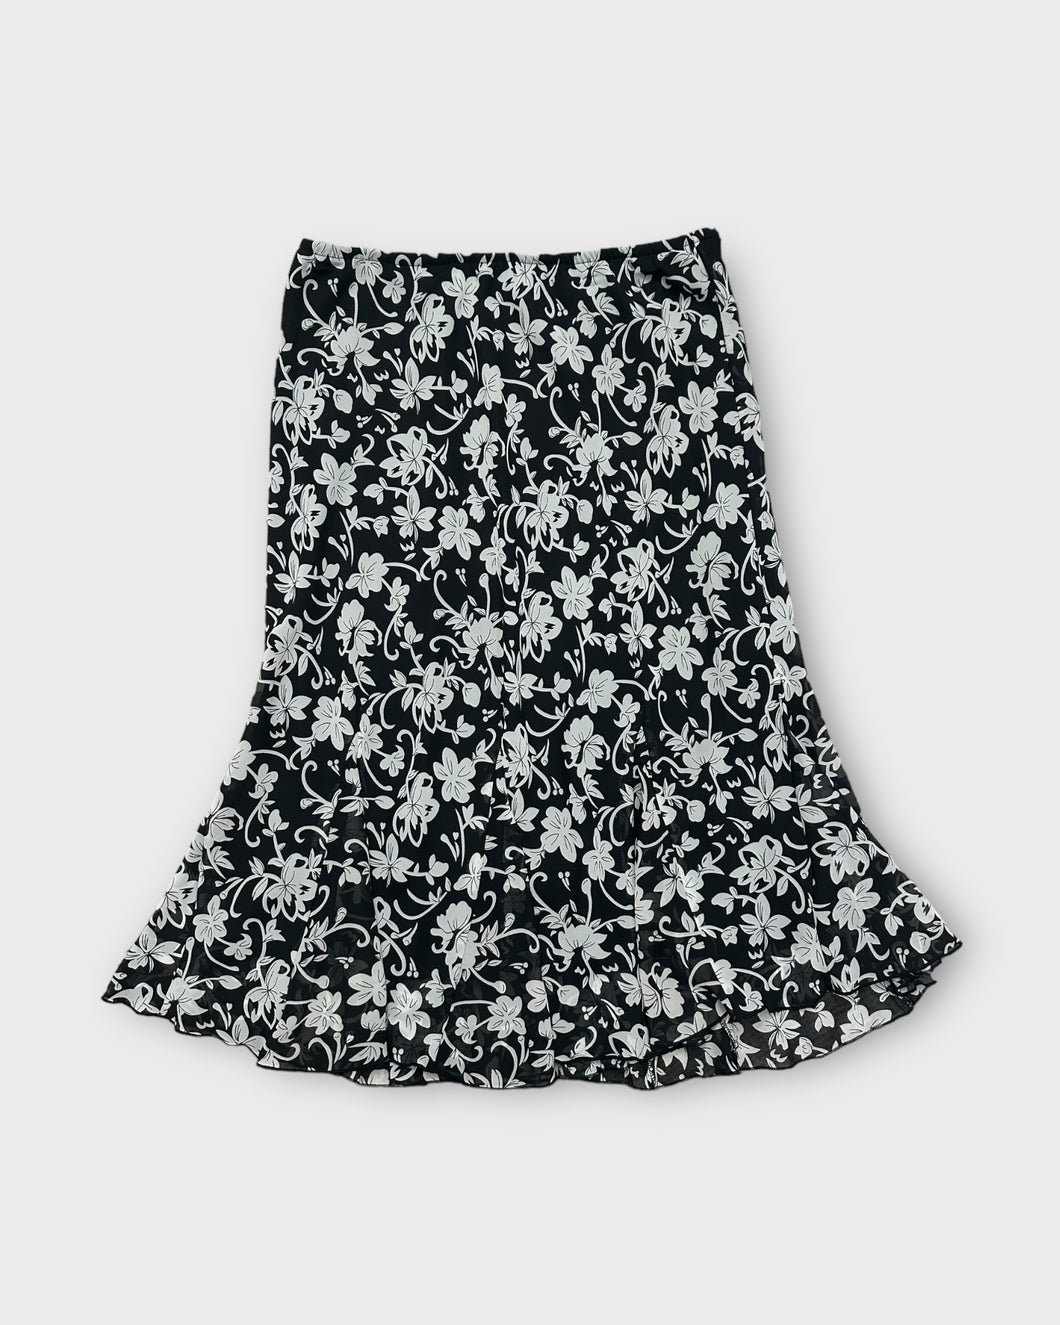 R&K Originals B&W Floral Maxi Skirt (12)